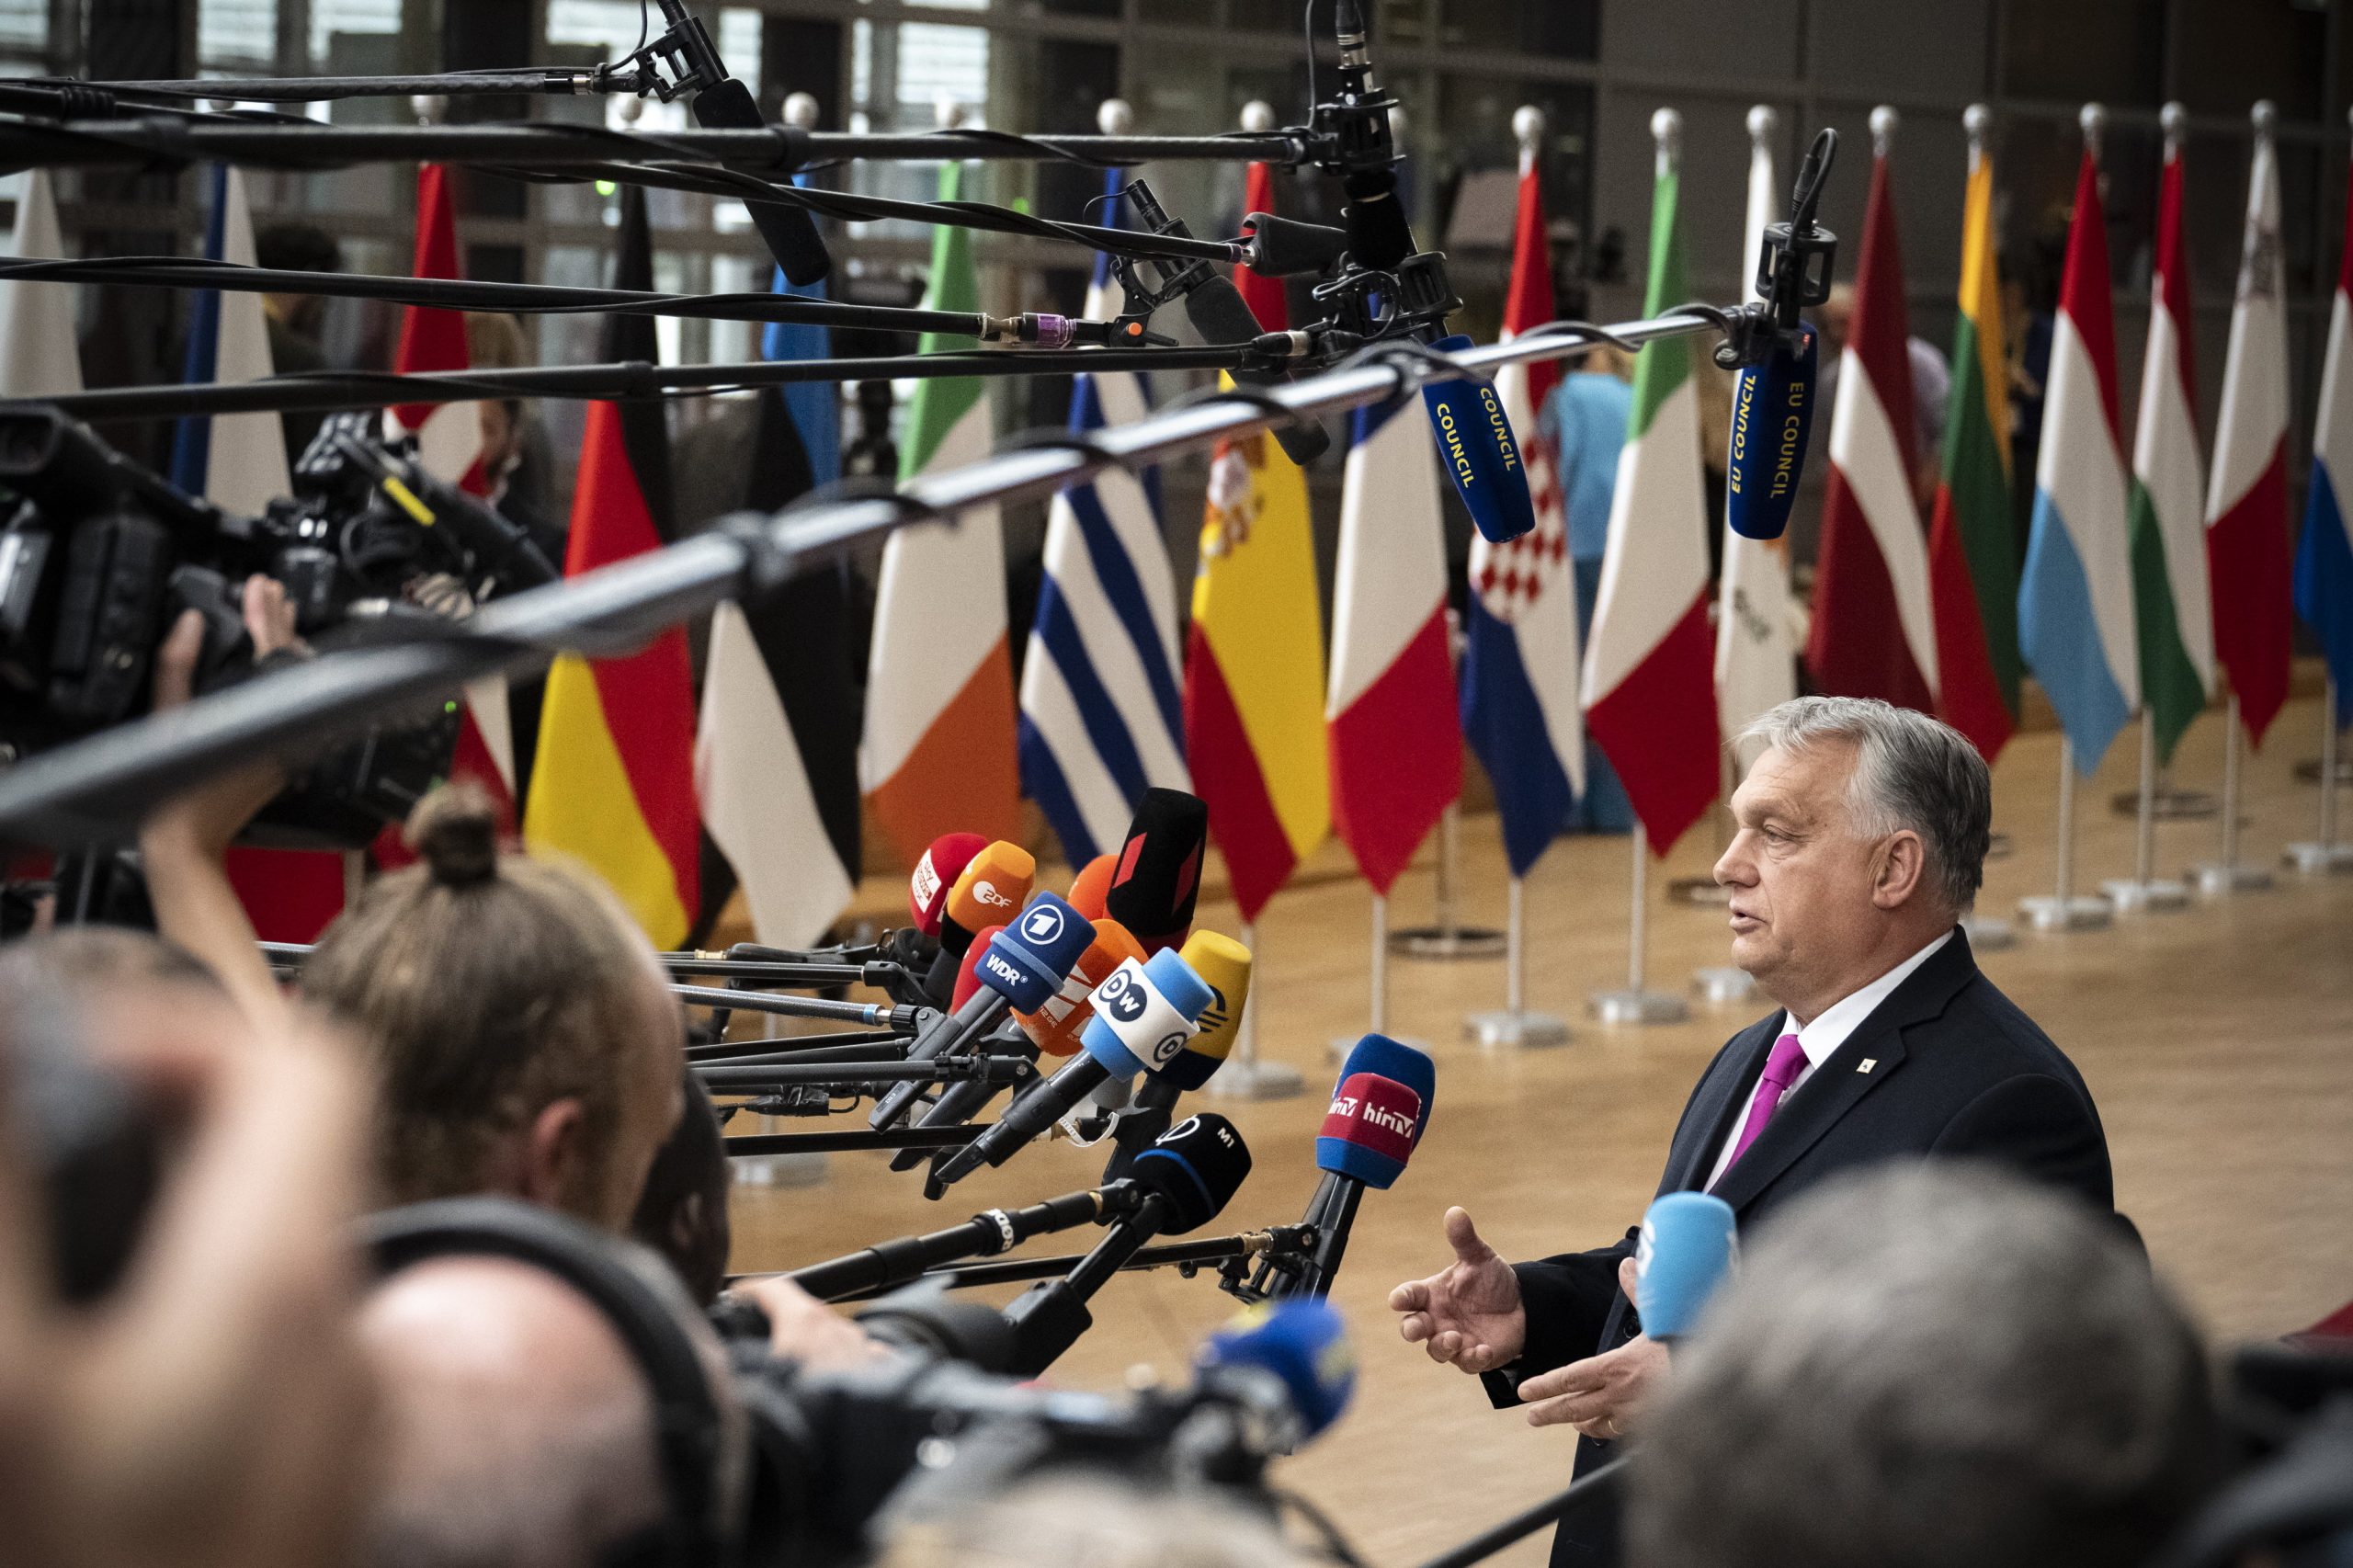 Wer die Migration unterstützt, unterstützt auch den Terrorismus, sagt Viktor Orbán